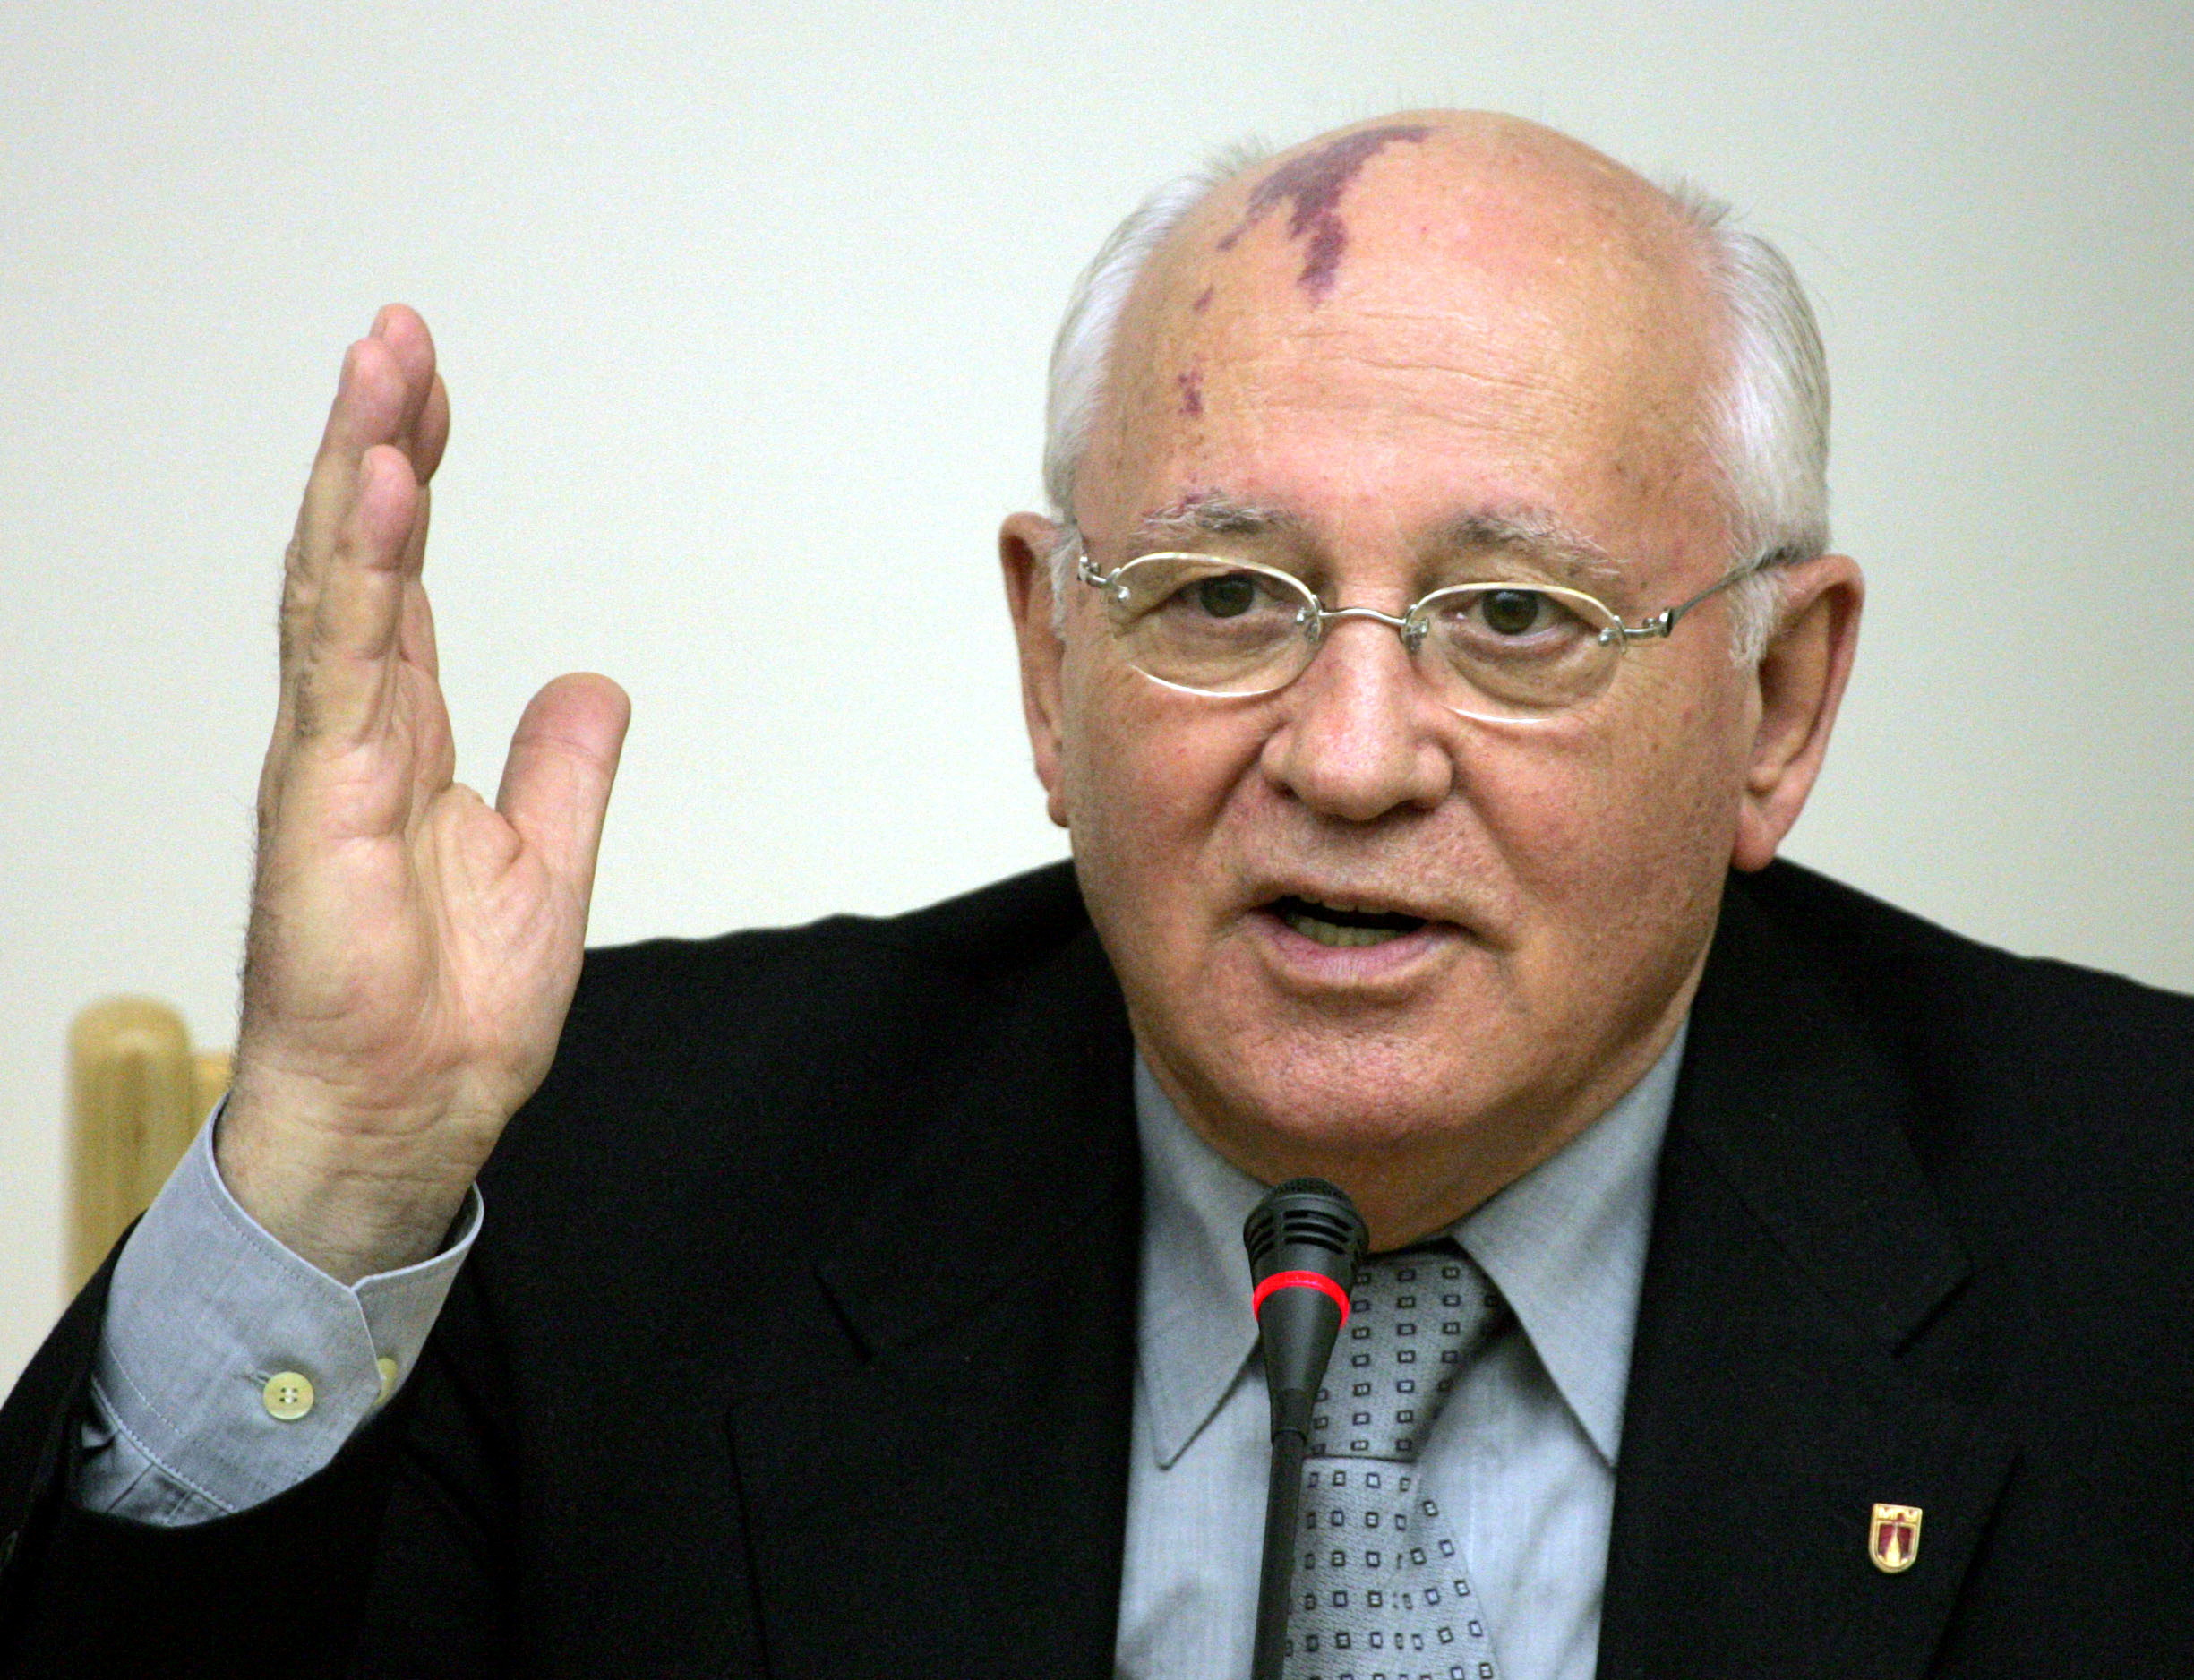 ΥΠΕΞ για  Γκορμπατσόφ: Μεγάλος Ευρωπαίους, συνέβαλε καθοριστικά στον τερματισμό του ψυχρού πολέμου